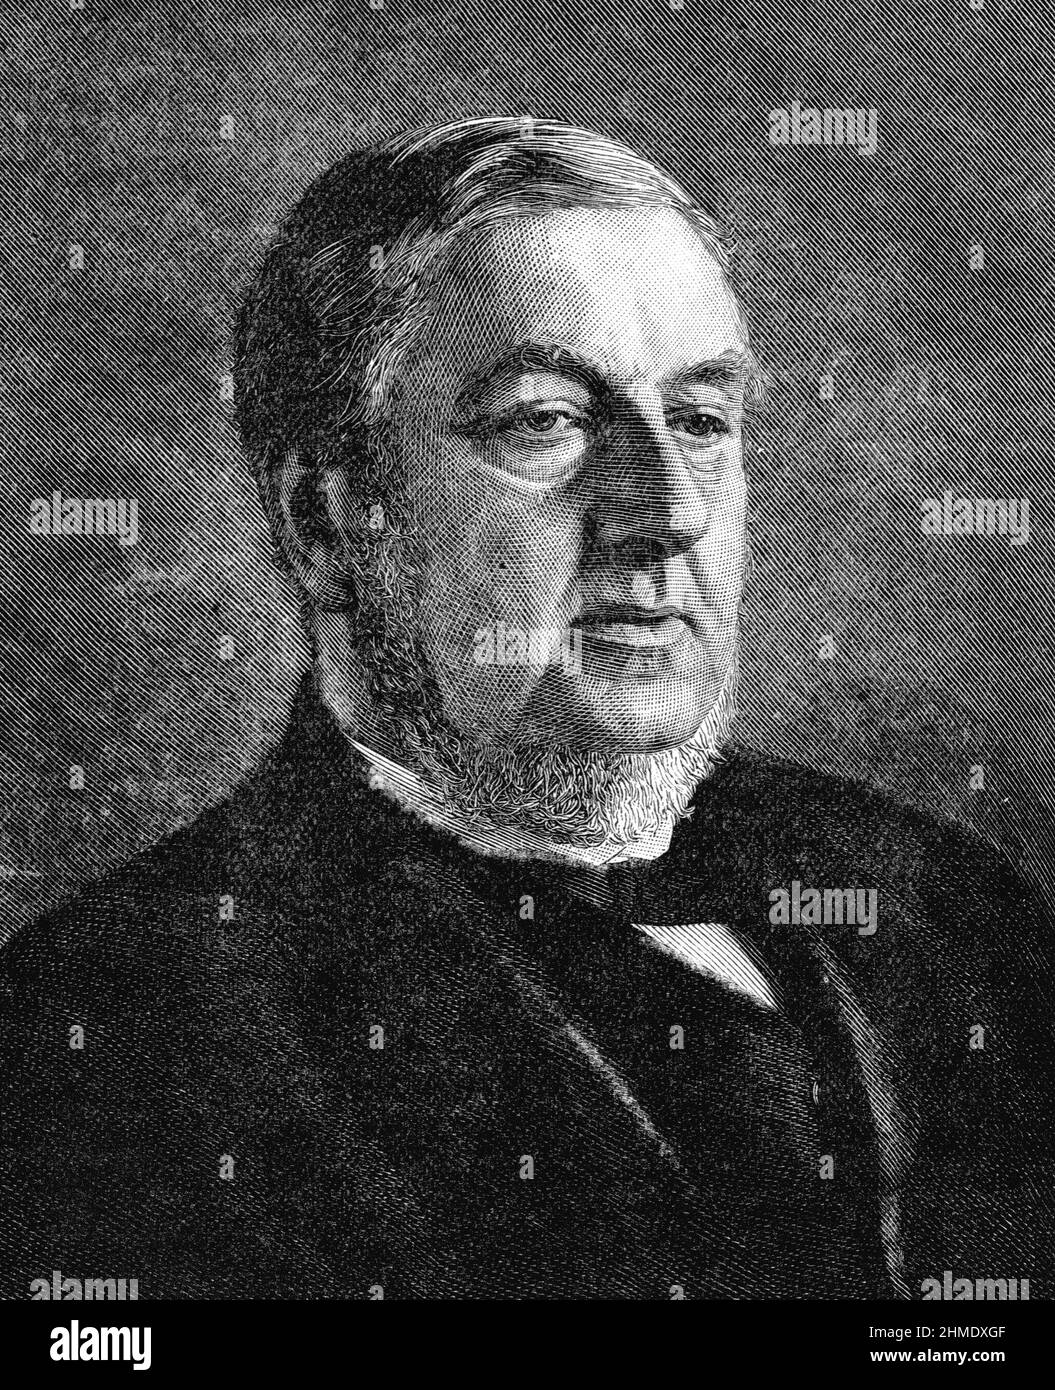 Illustration en noir et blanc; Portrait de Sir William Vernon Harcourt, avocat britannique, journaliste et homme d'État libéral Banque D'Images